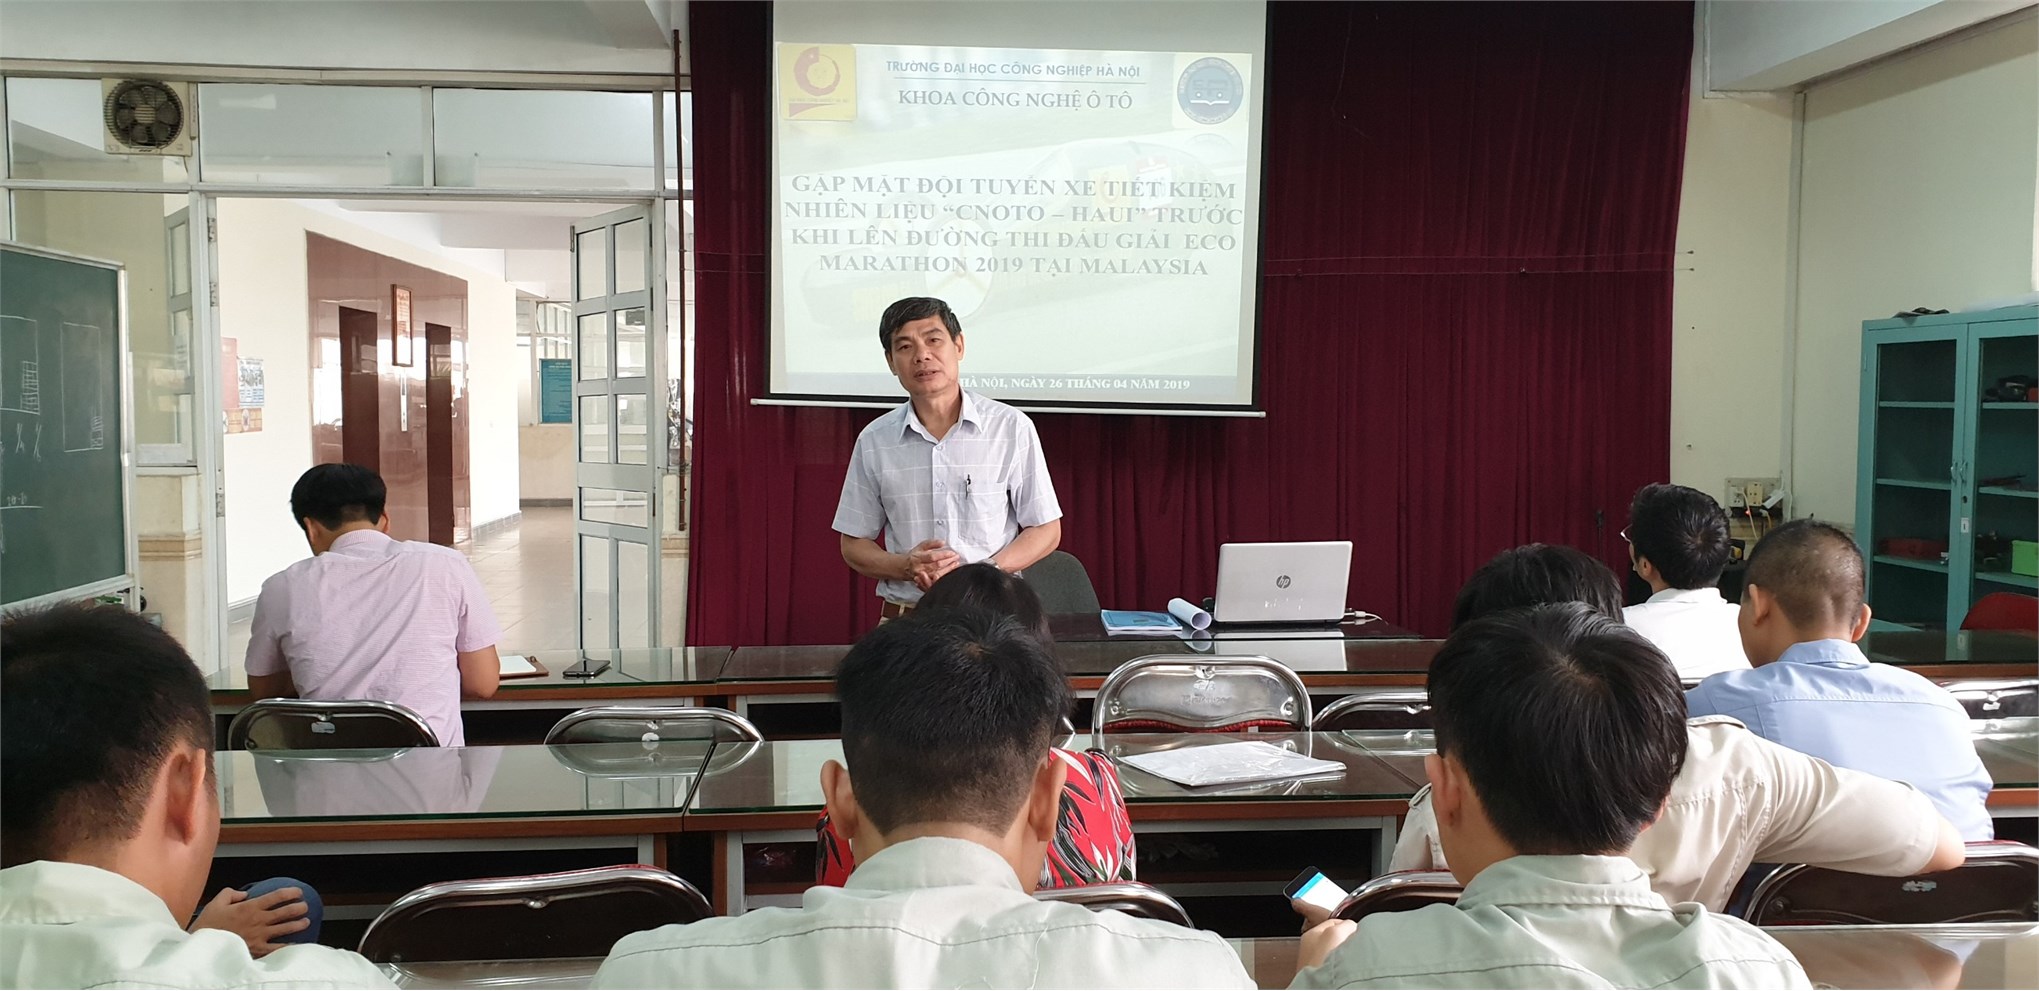 PGS.TS Nguyễn Tiến Hán phát biểu tại buổi gặp mặt